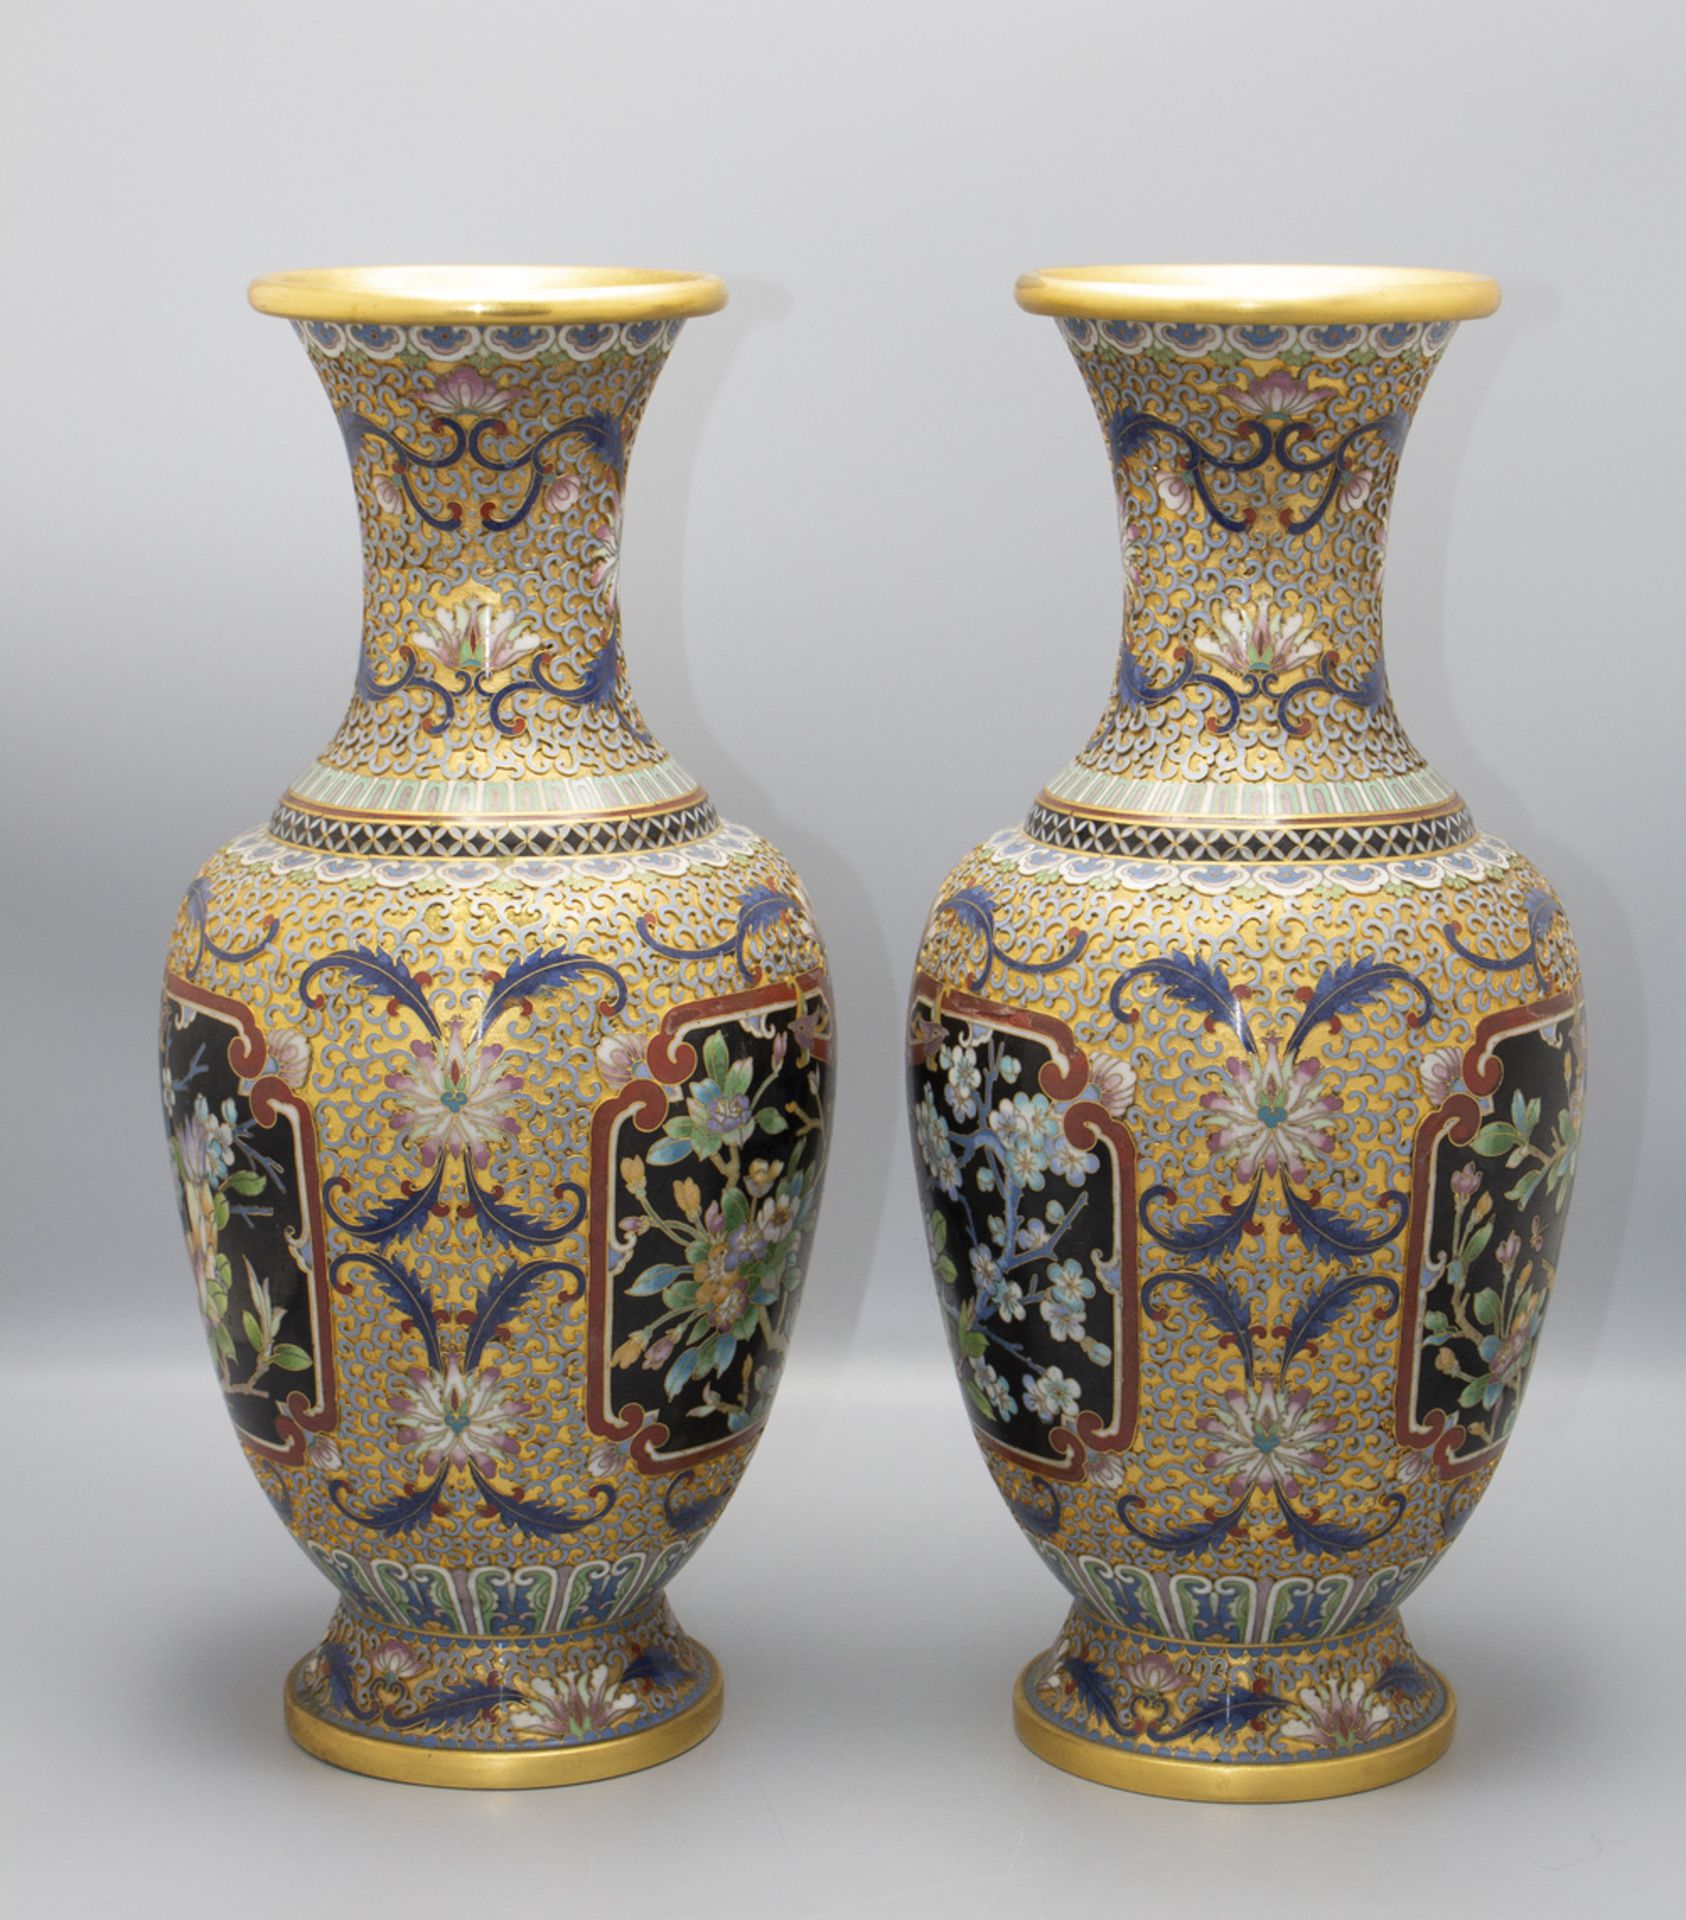 Paar Cloisonne-Vasen / A pair of Cloisonné vases, China, um 1900 - Bild 2 aus 5